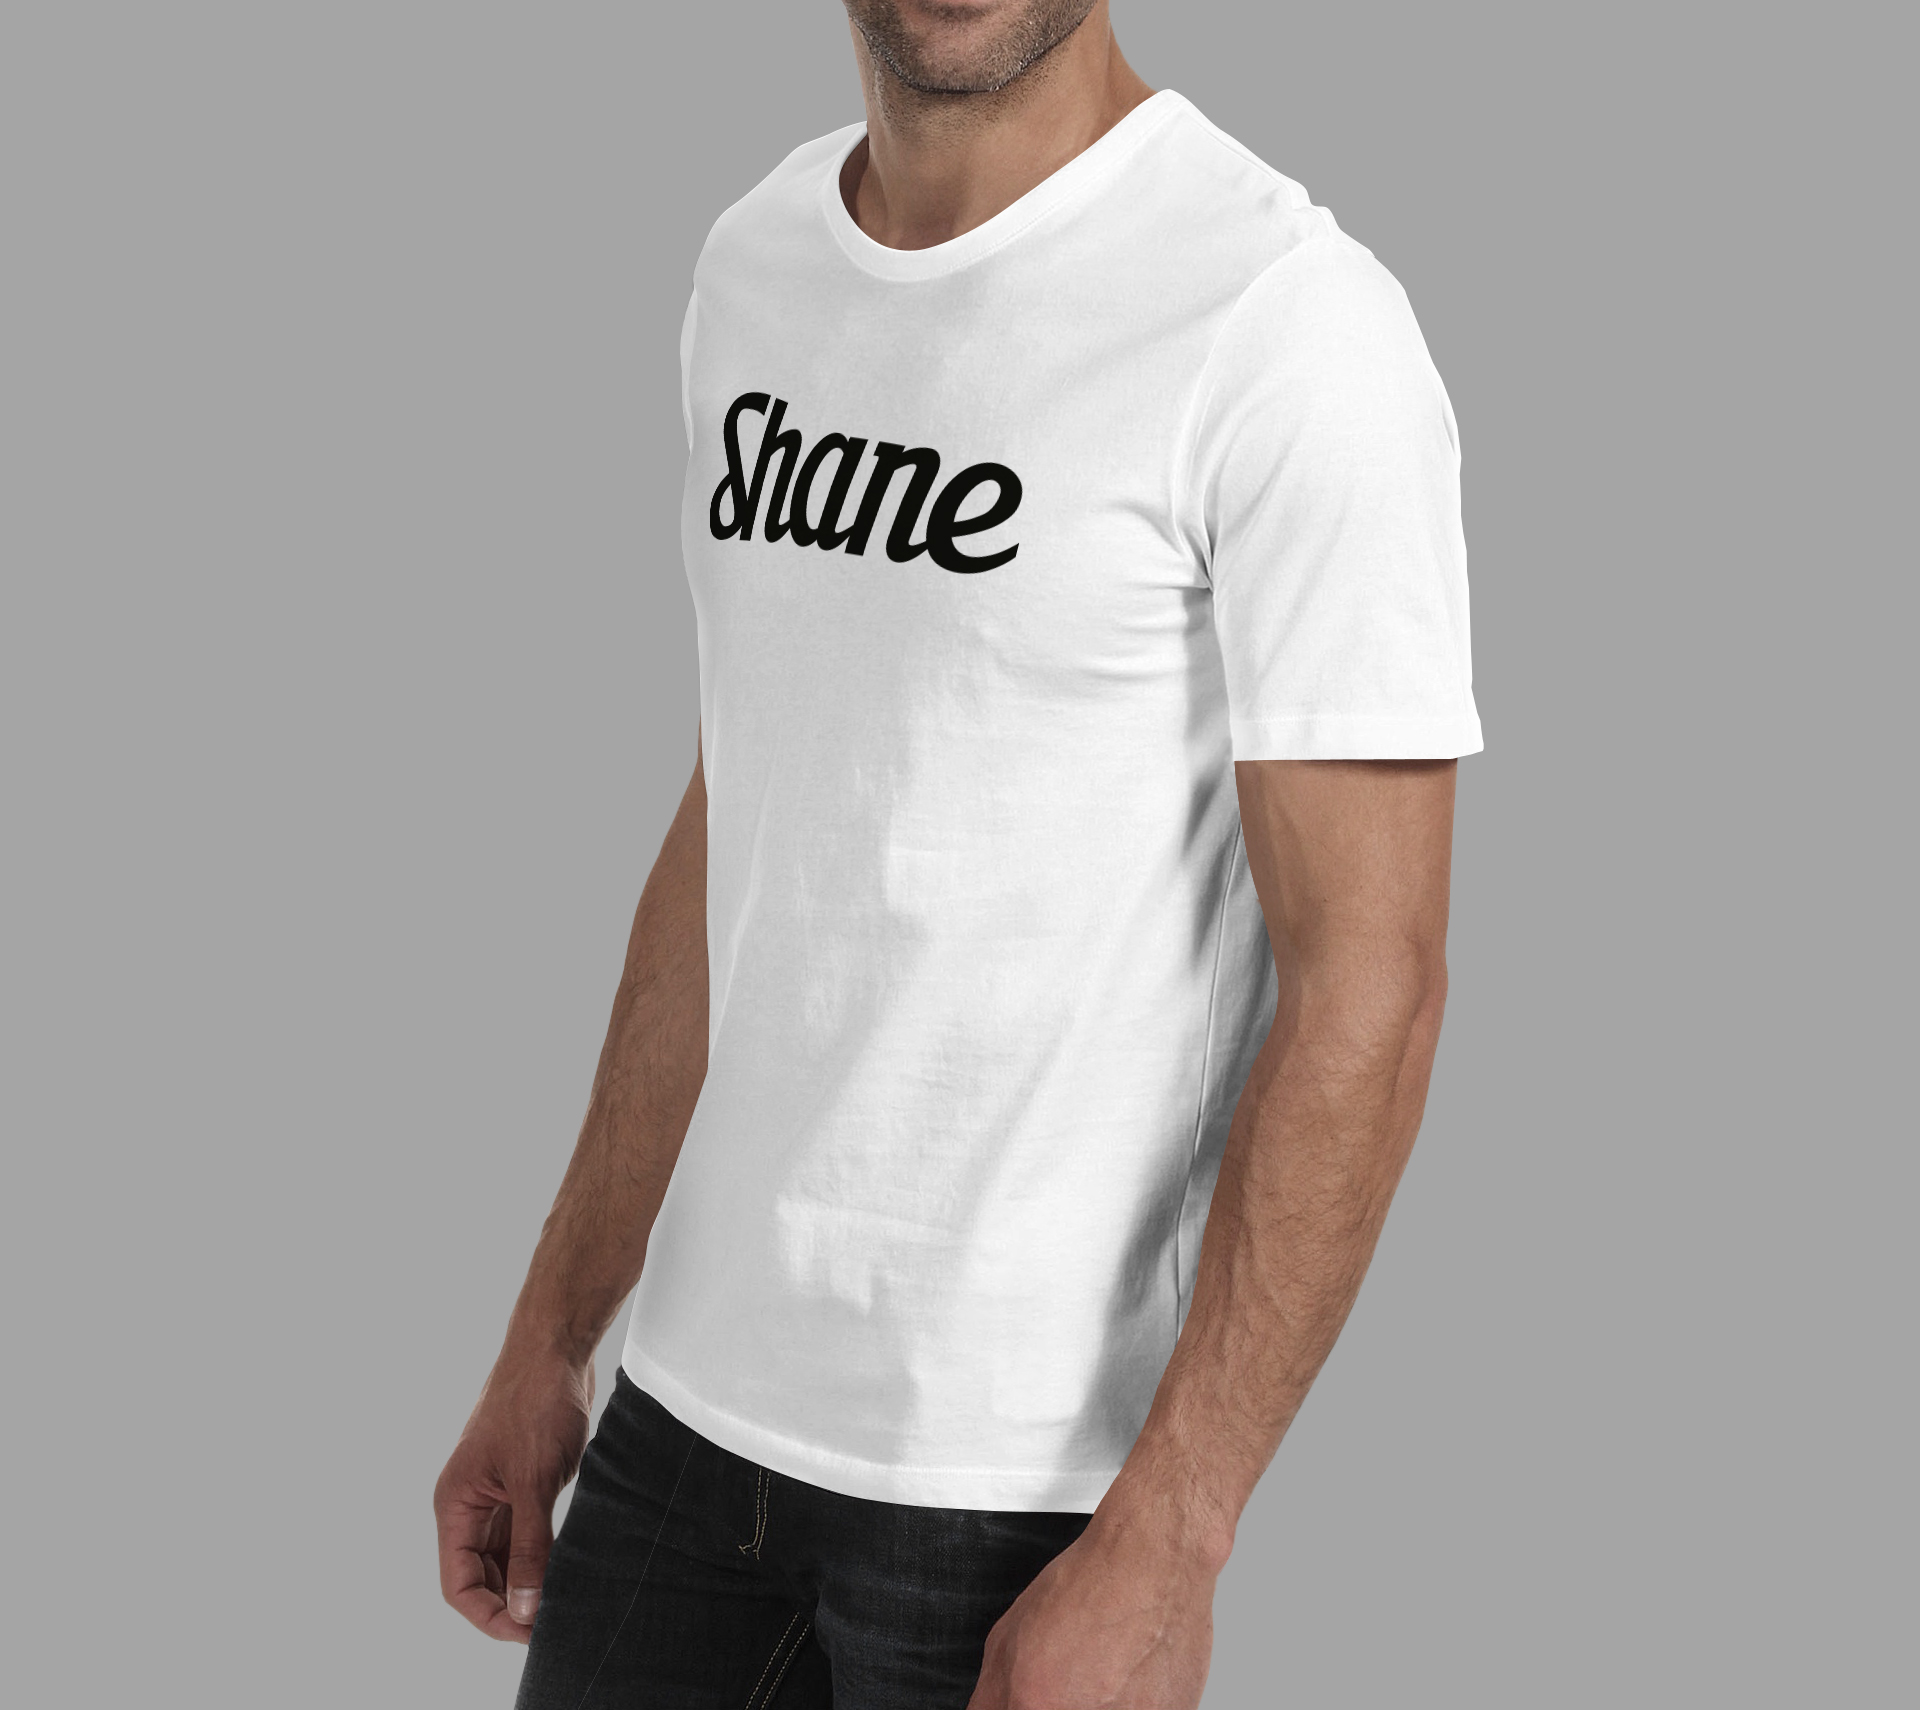 t-shirt-shane-2